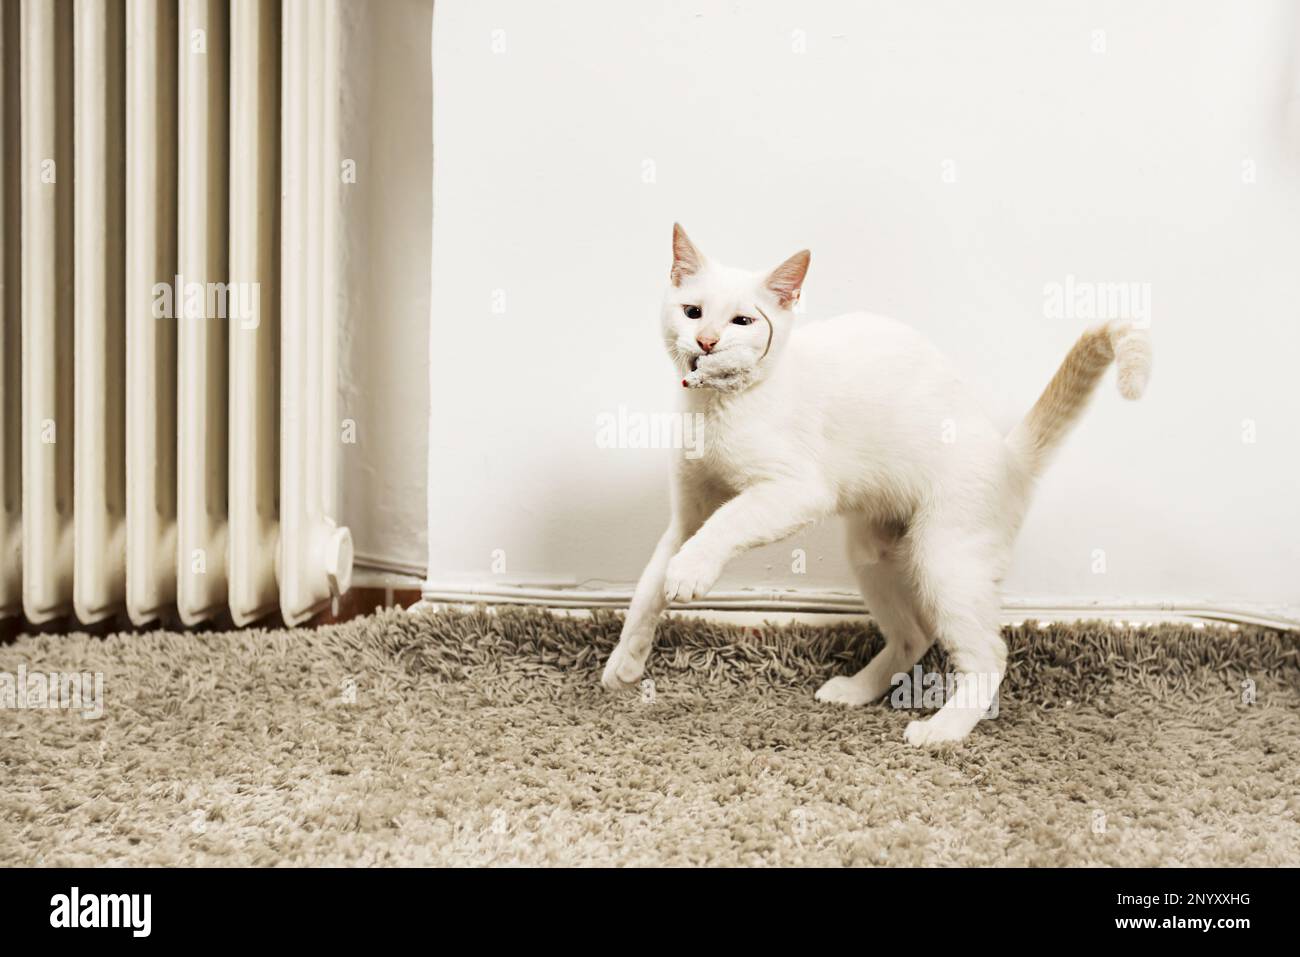 Un dulce gatito blanco jugando con su pequeño ratón de juguete en una alfombra gris de pelo largo Foto de stock